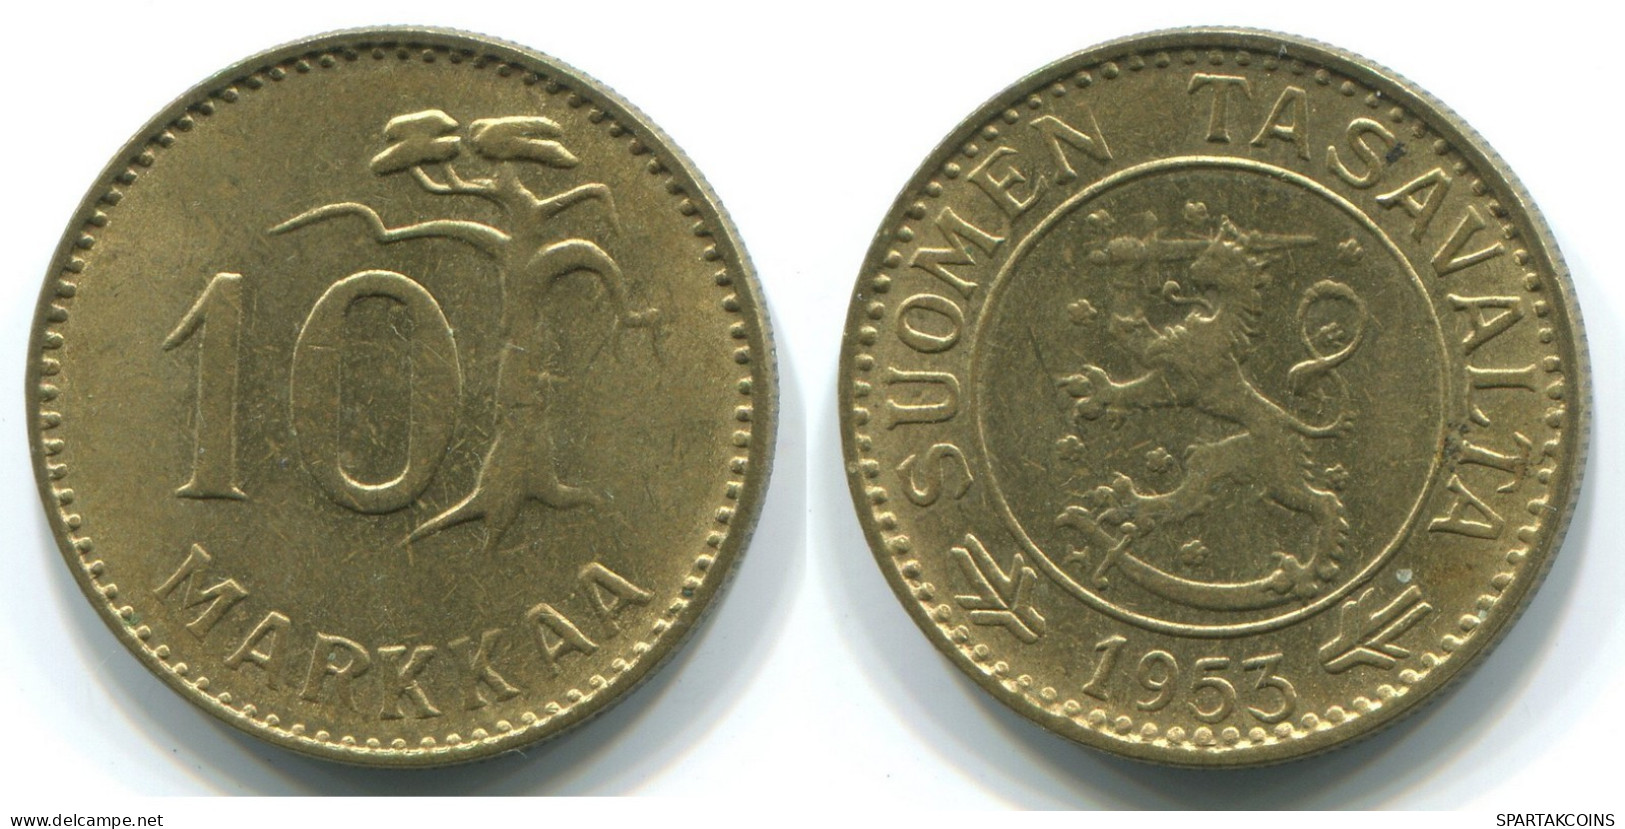 10 MARKKAA 1953 FINLAND Coin #WW1116.U.A - Finlandia